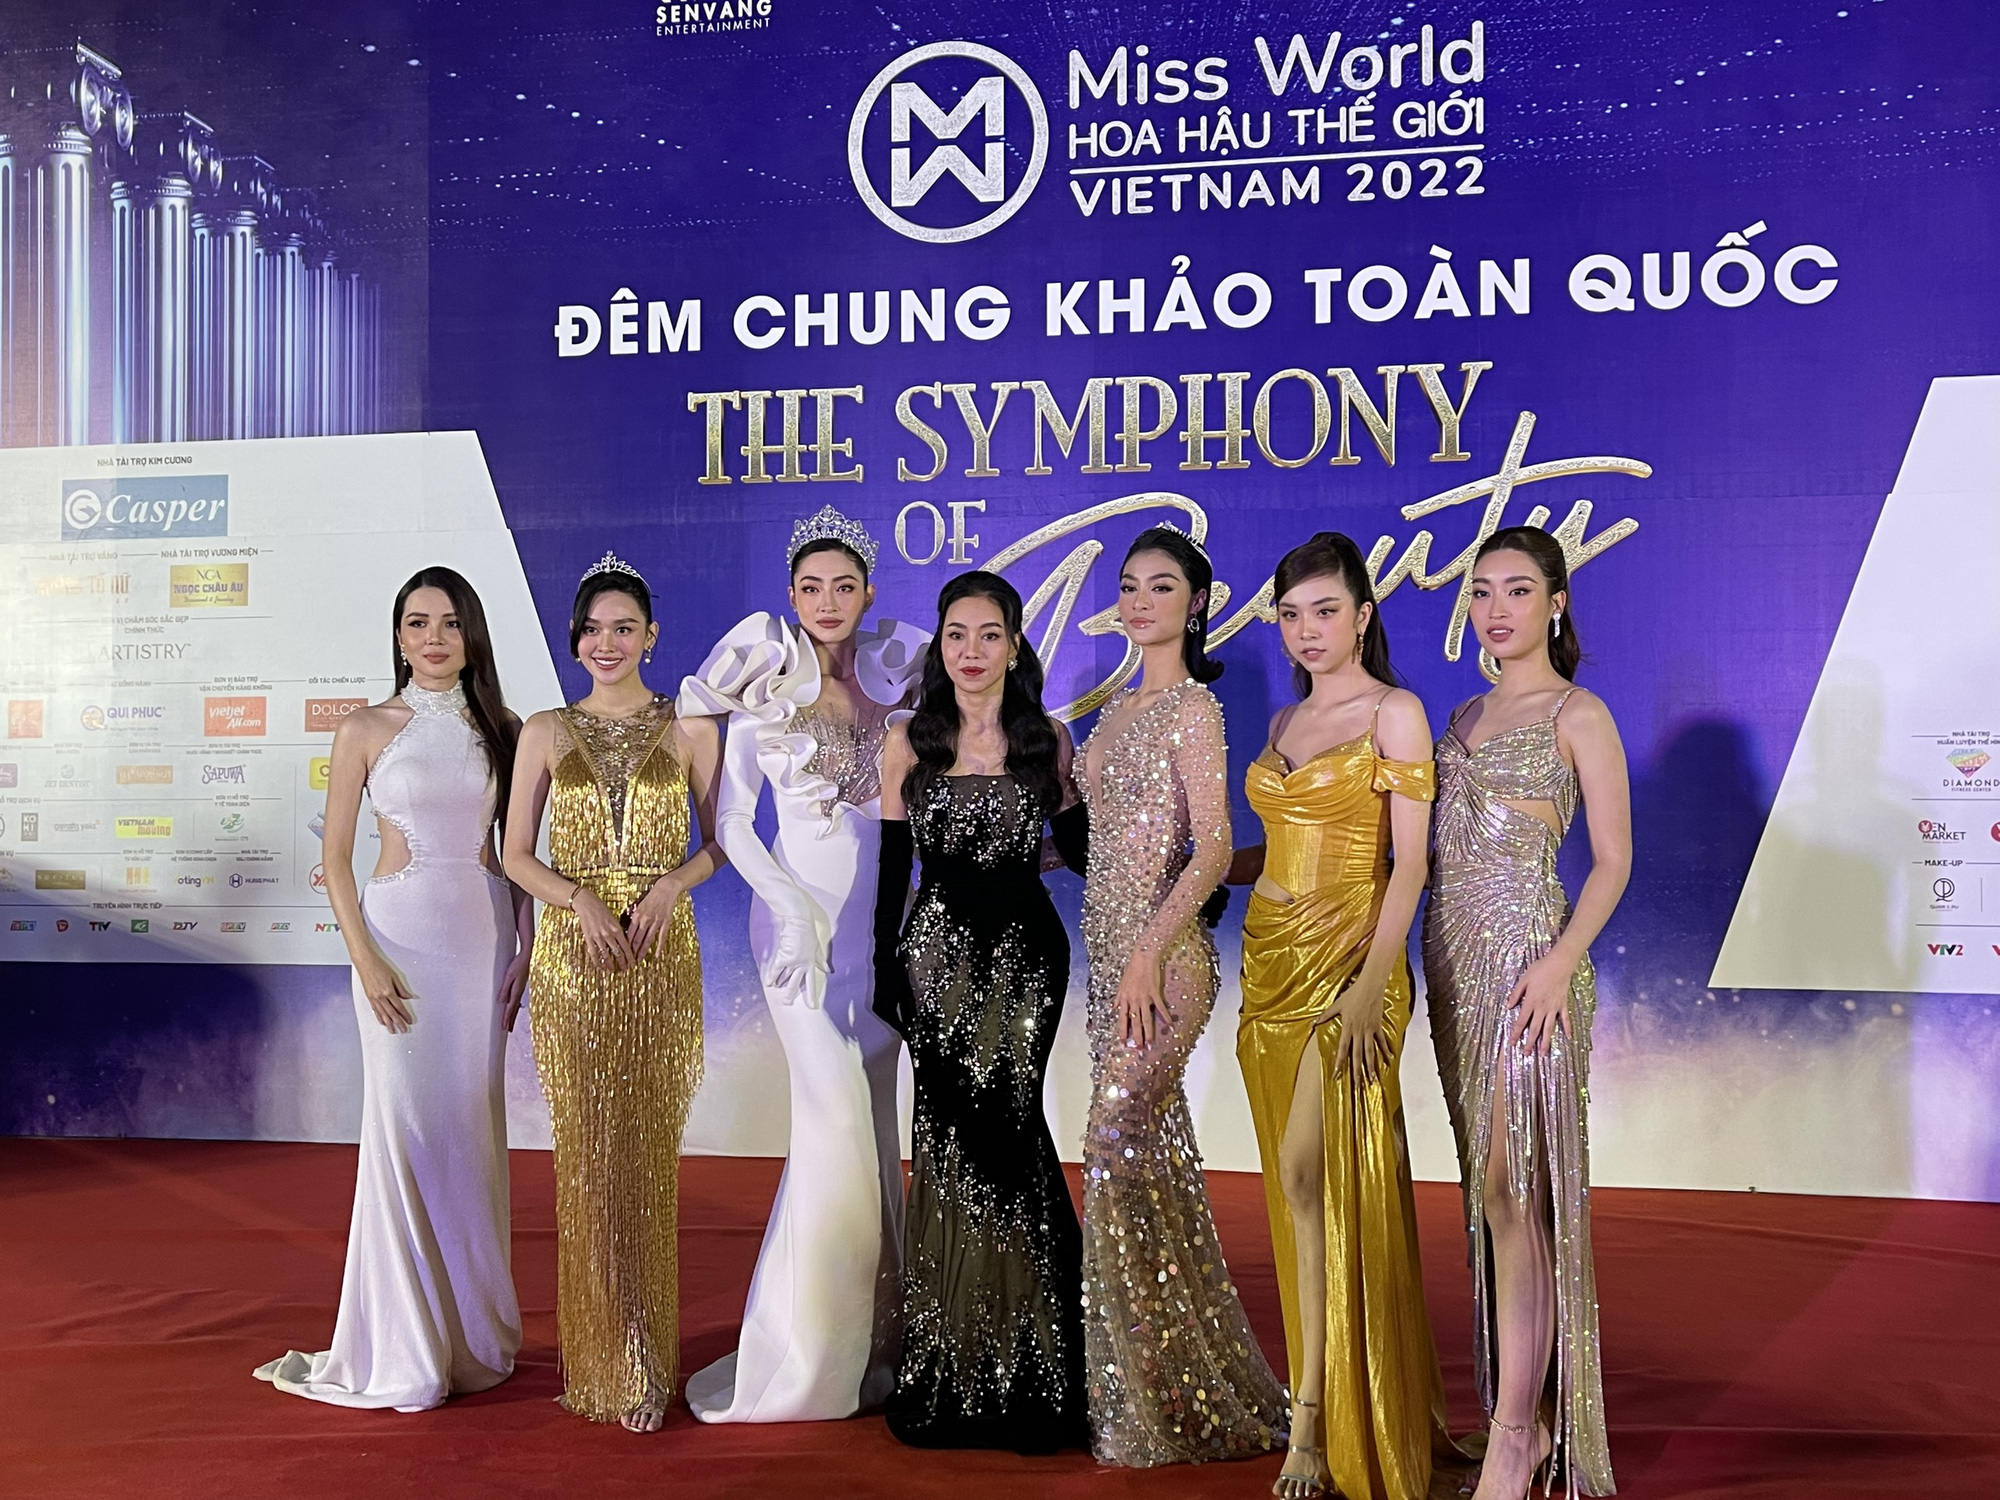 Thảm đỏ Chung khảo Miss World Việt Nam: Lộ rõ nhan sắc thật của dàn Hoa hậu - Á hậu qua ảnh chưa chỉnh sửa - Ảnh 3.